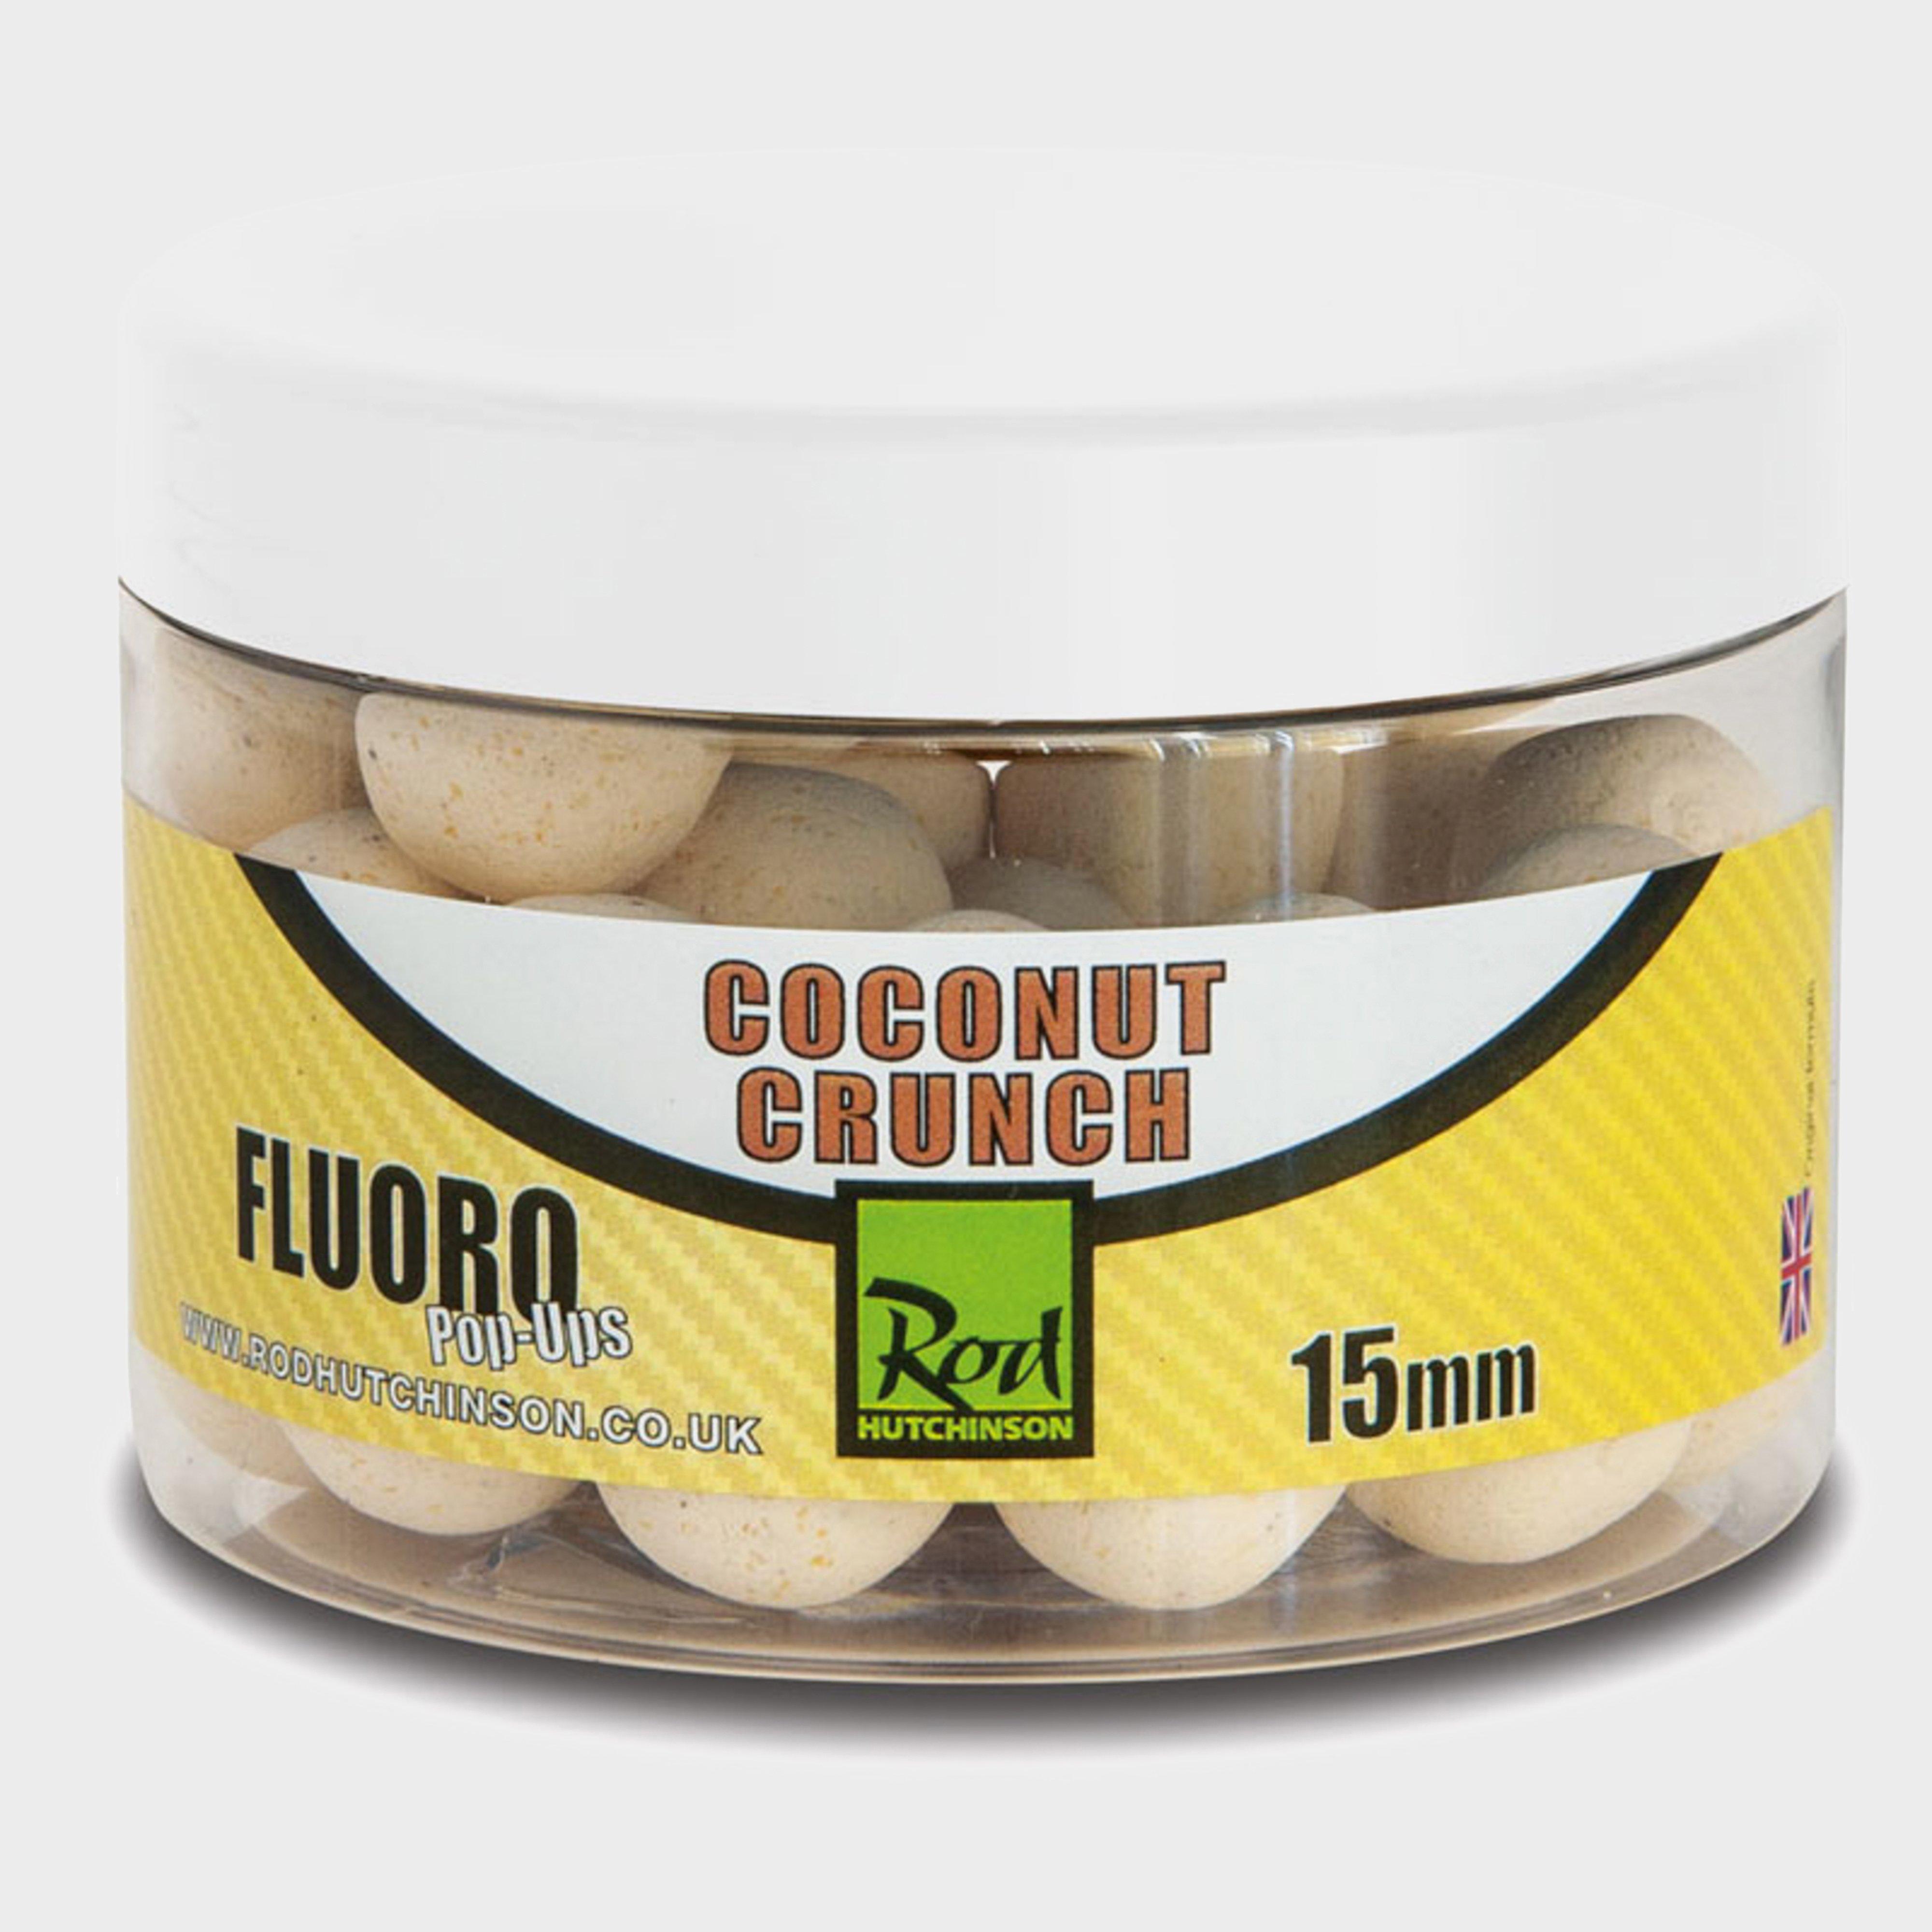 R Hutchinson Fluoro Pop Ups 15mm  Coconut Crunch  Multi Coloured